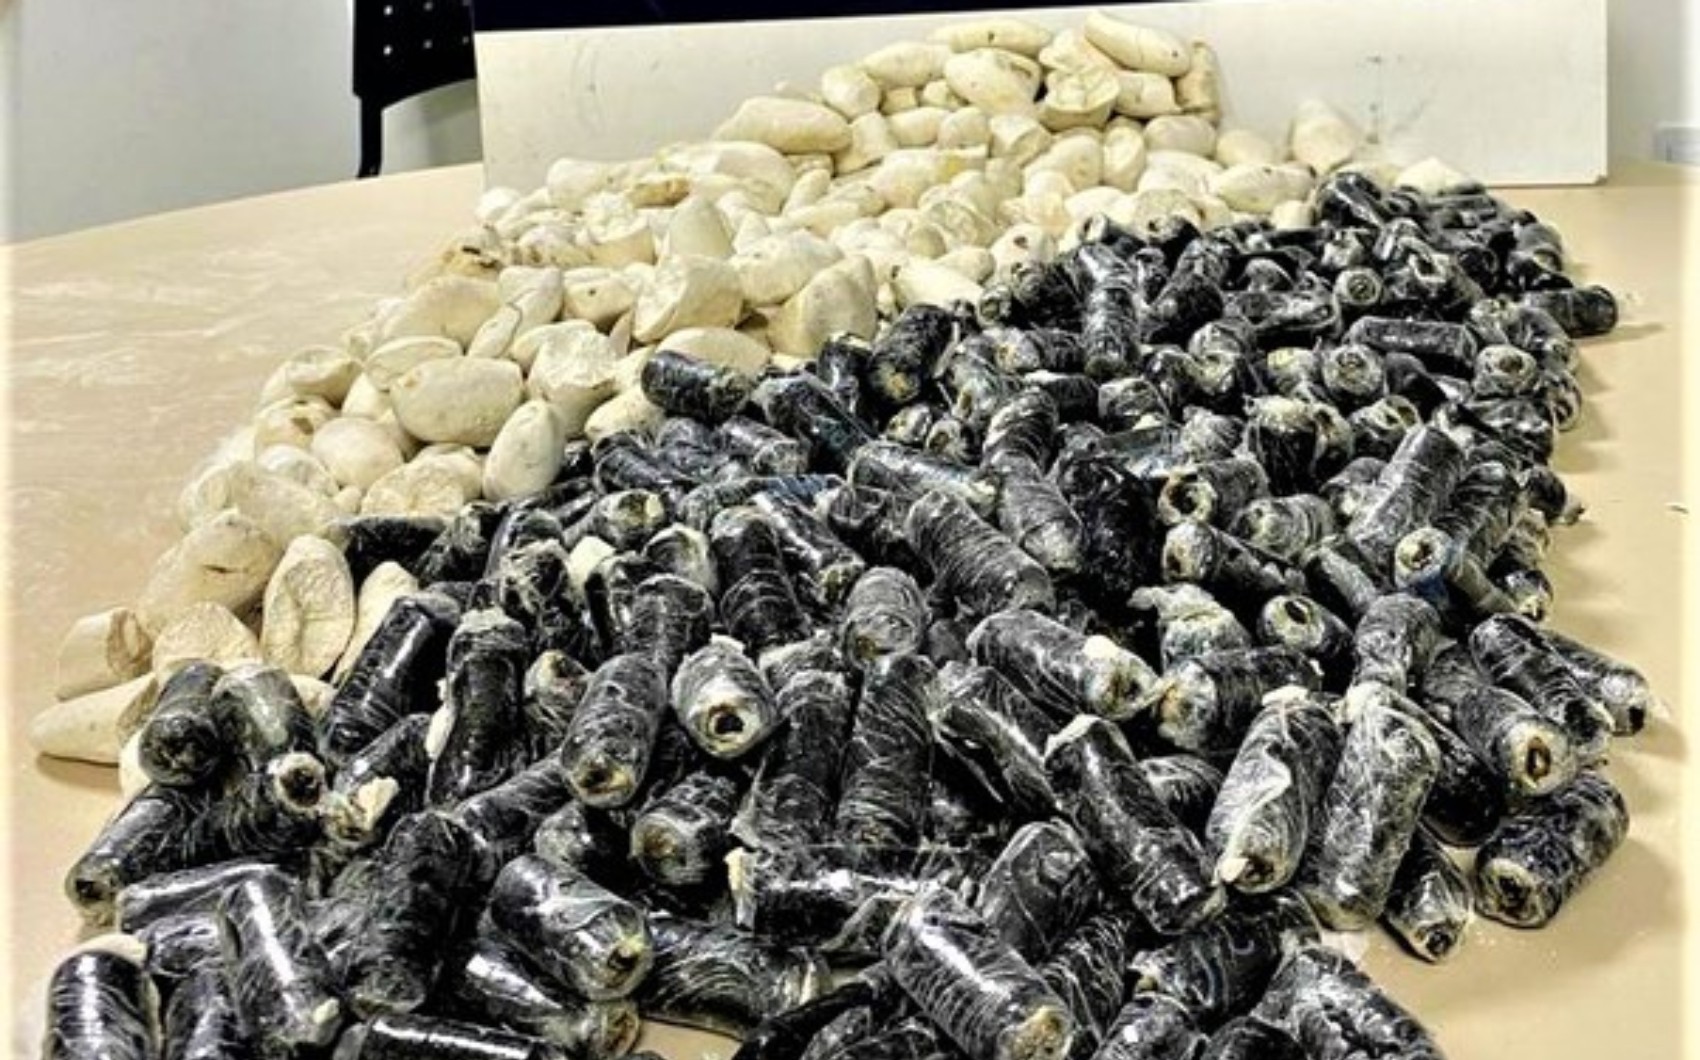 Boliviana é presa por tráfico após esconder cocaína em batatas falsas no sudoeste da Bahia 